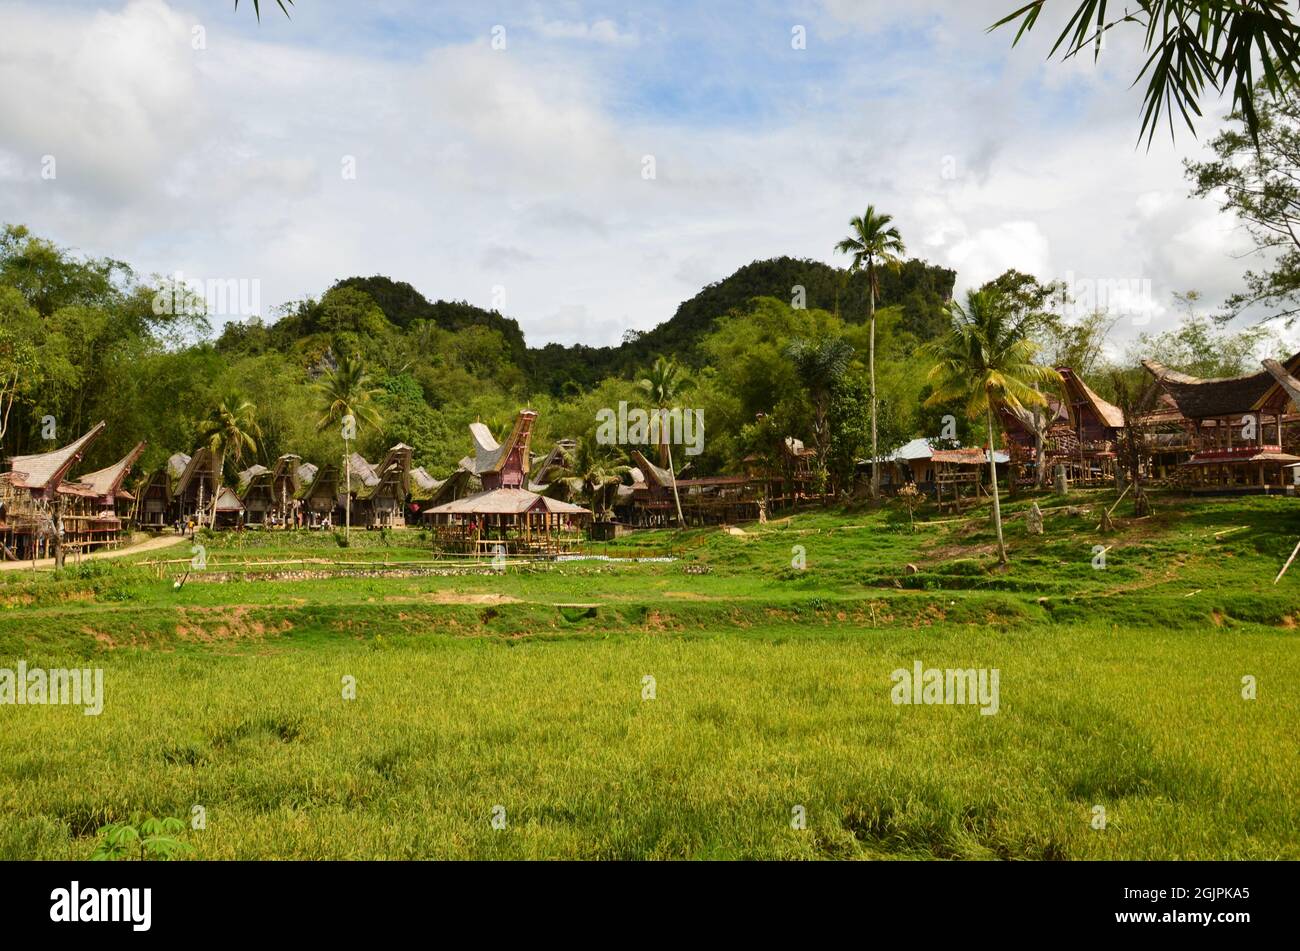 Village de Toraja dans la région montagneuse de Sulawesi Sud, Indonésie. Avec des maisons ethniques de tongkonan Banque D'Images